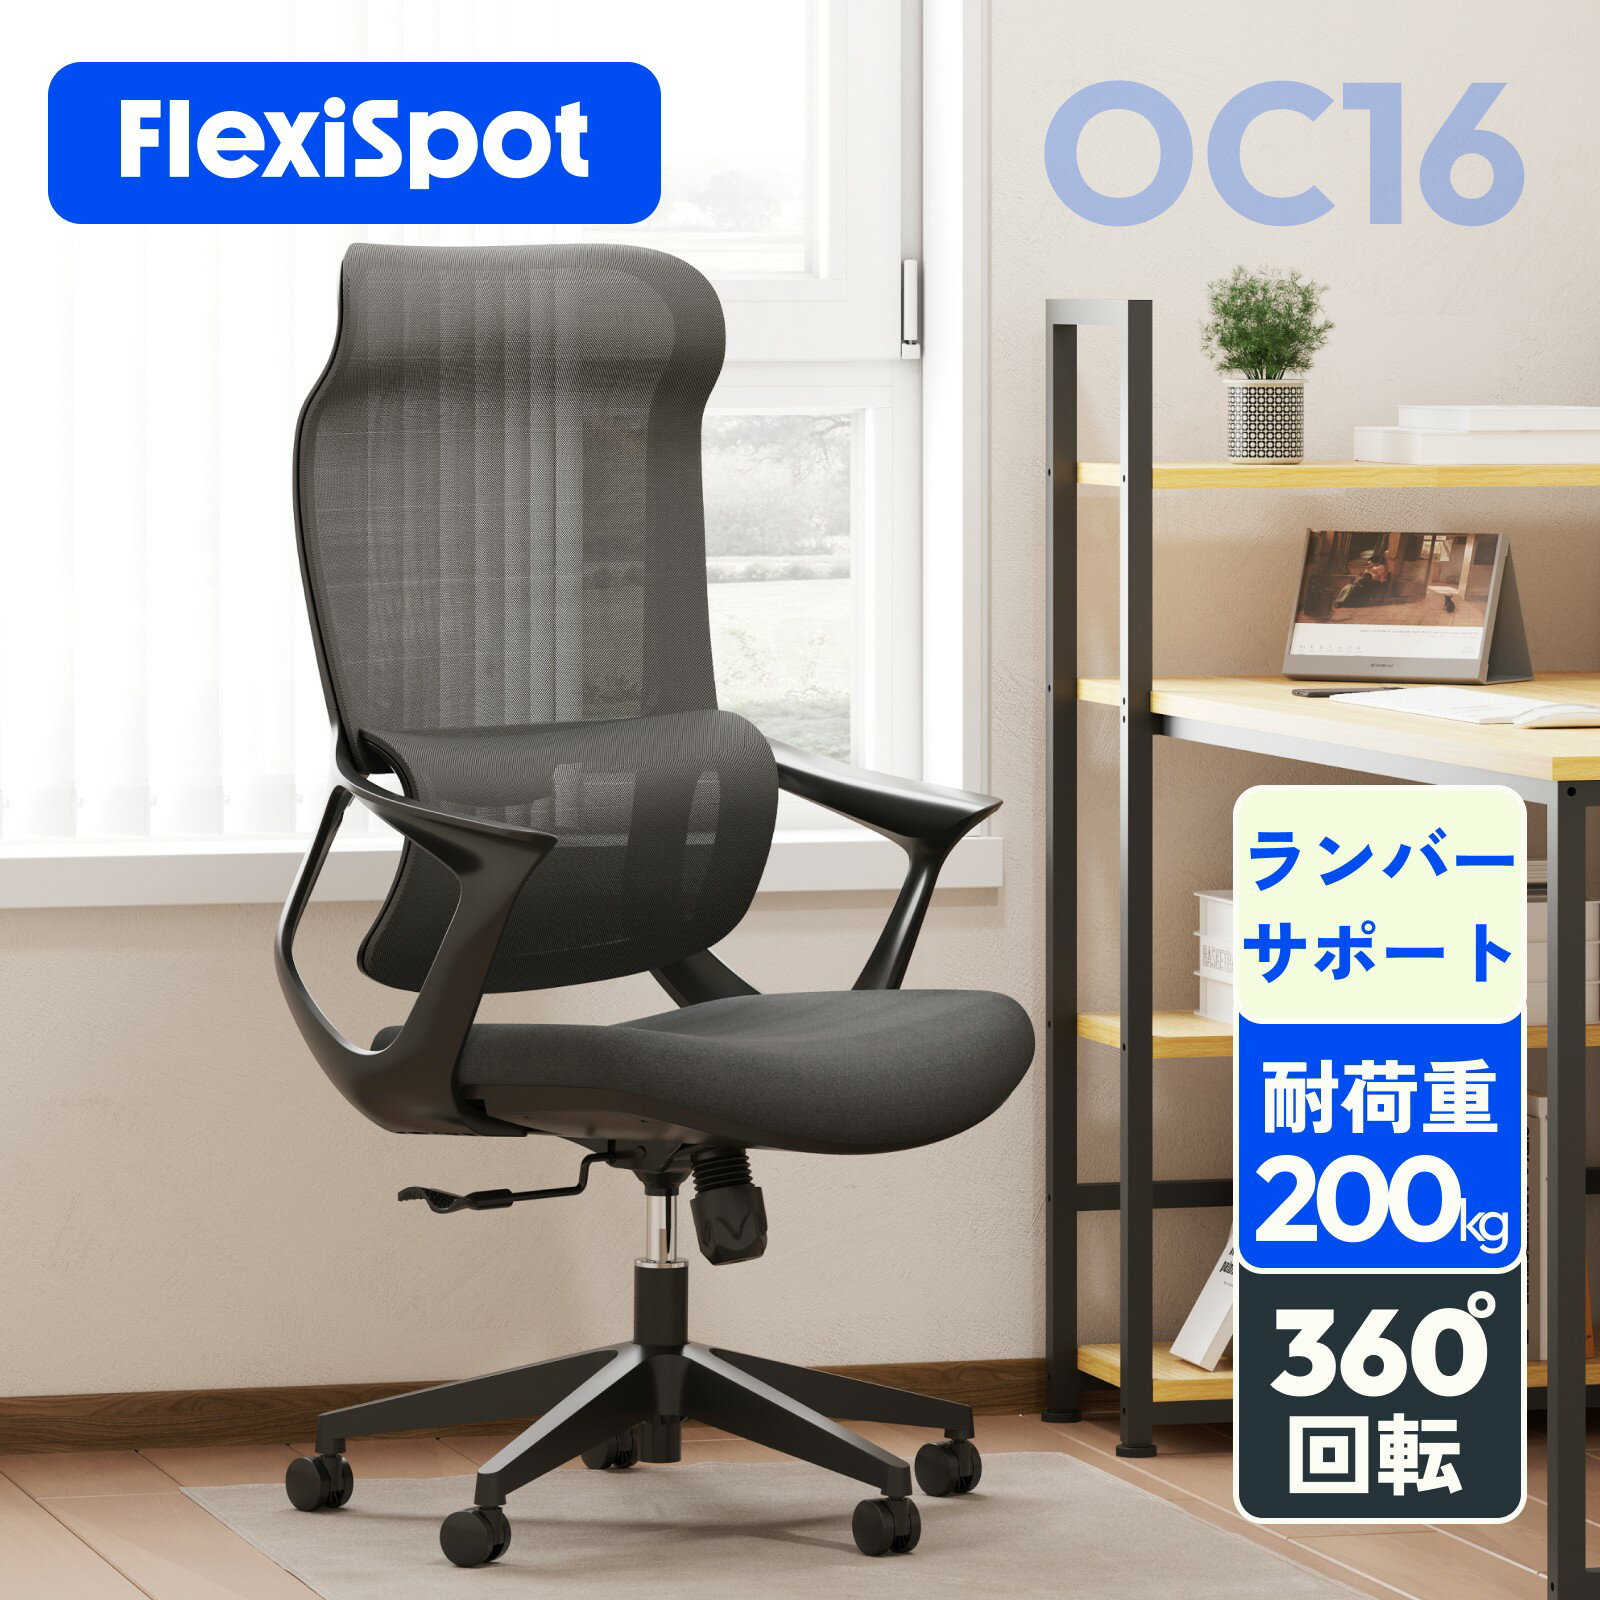 オフィスチェア メッシュ リクライニング FlexiSpot OC16 デスクチェア メッシュチェア ロッキング 肘付き チェア 回転 仕事用 椅子 ハイバックチェア ランバーサポート ヘッドレスト パソコンチェア おしゃれ 背もたれ